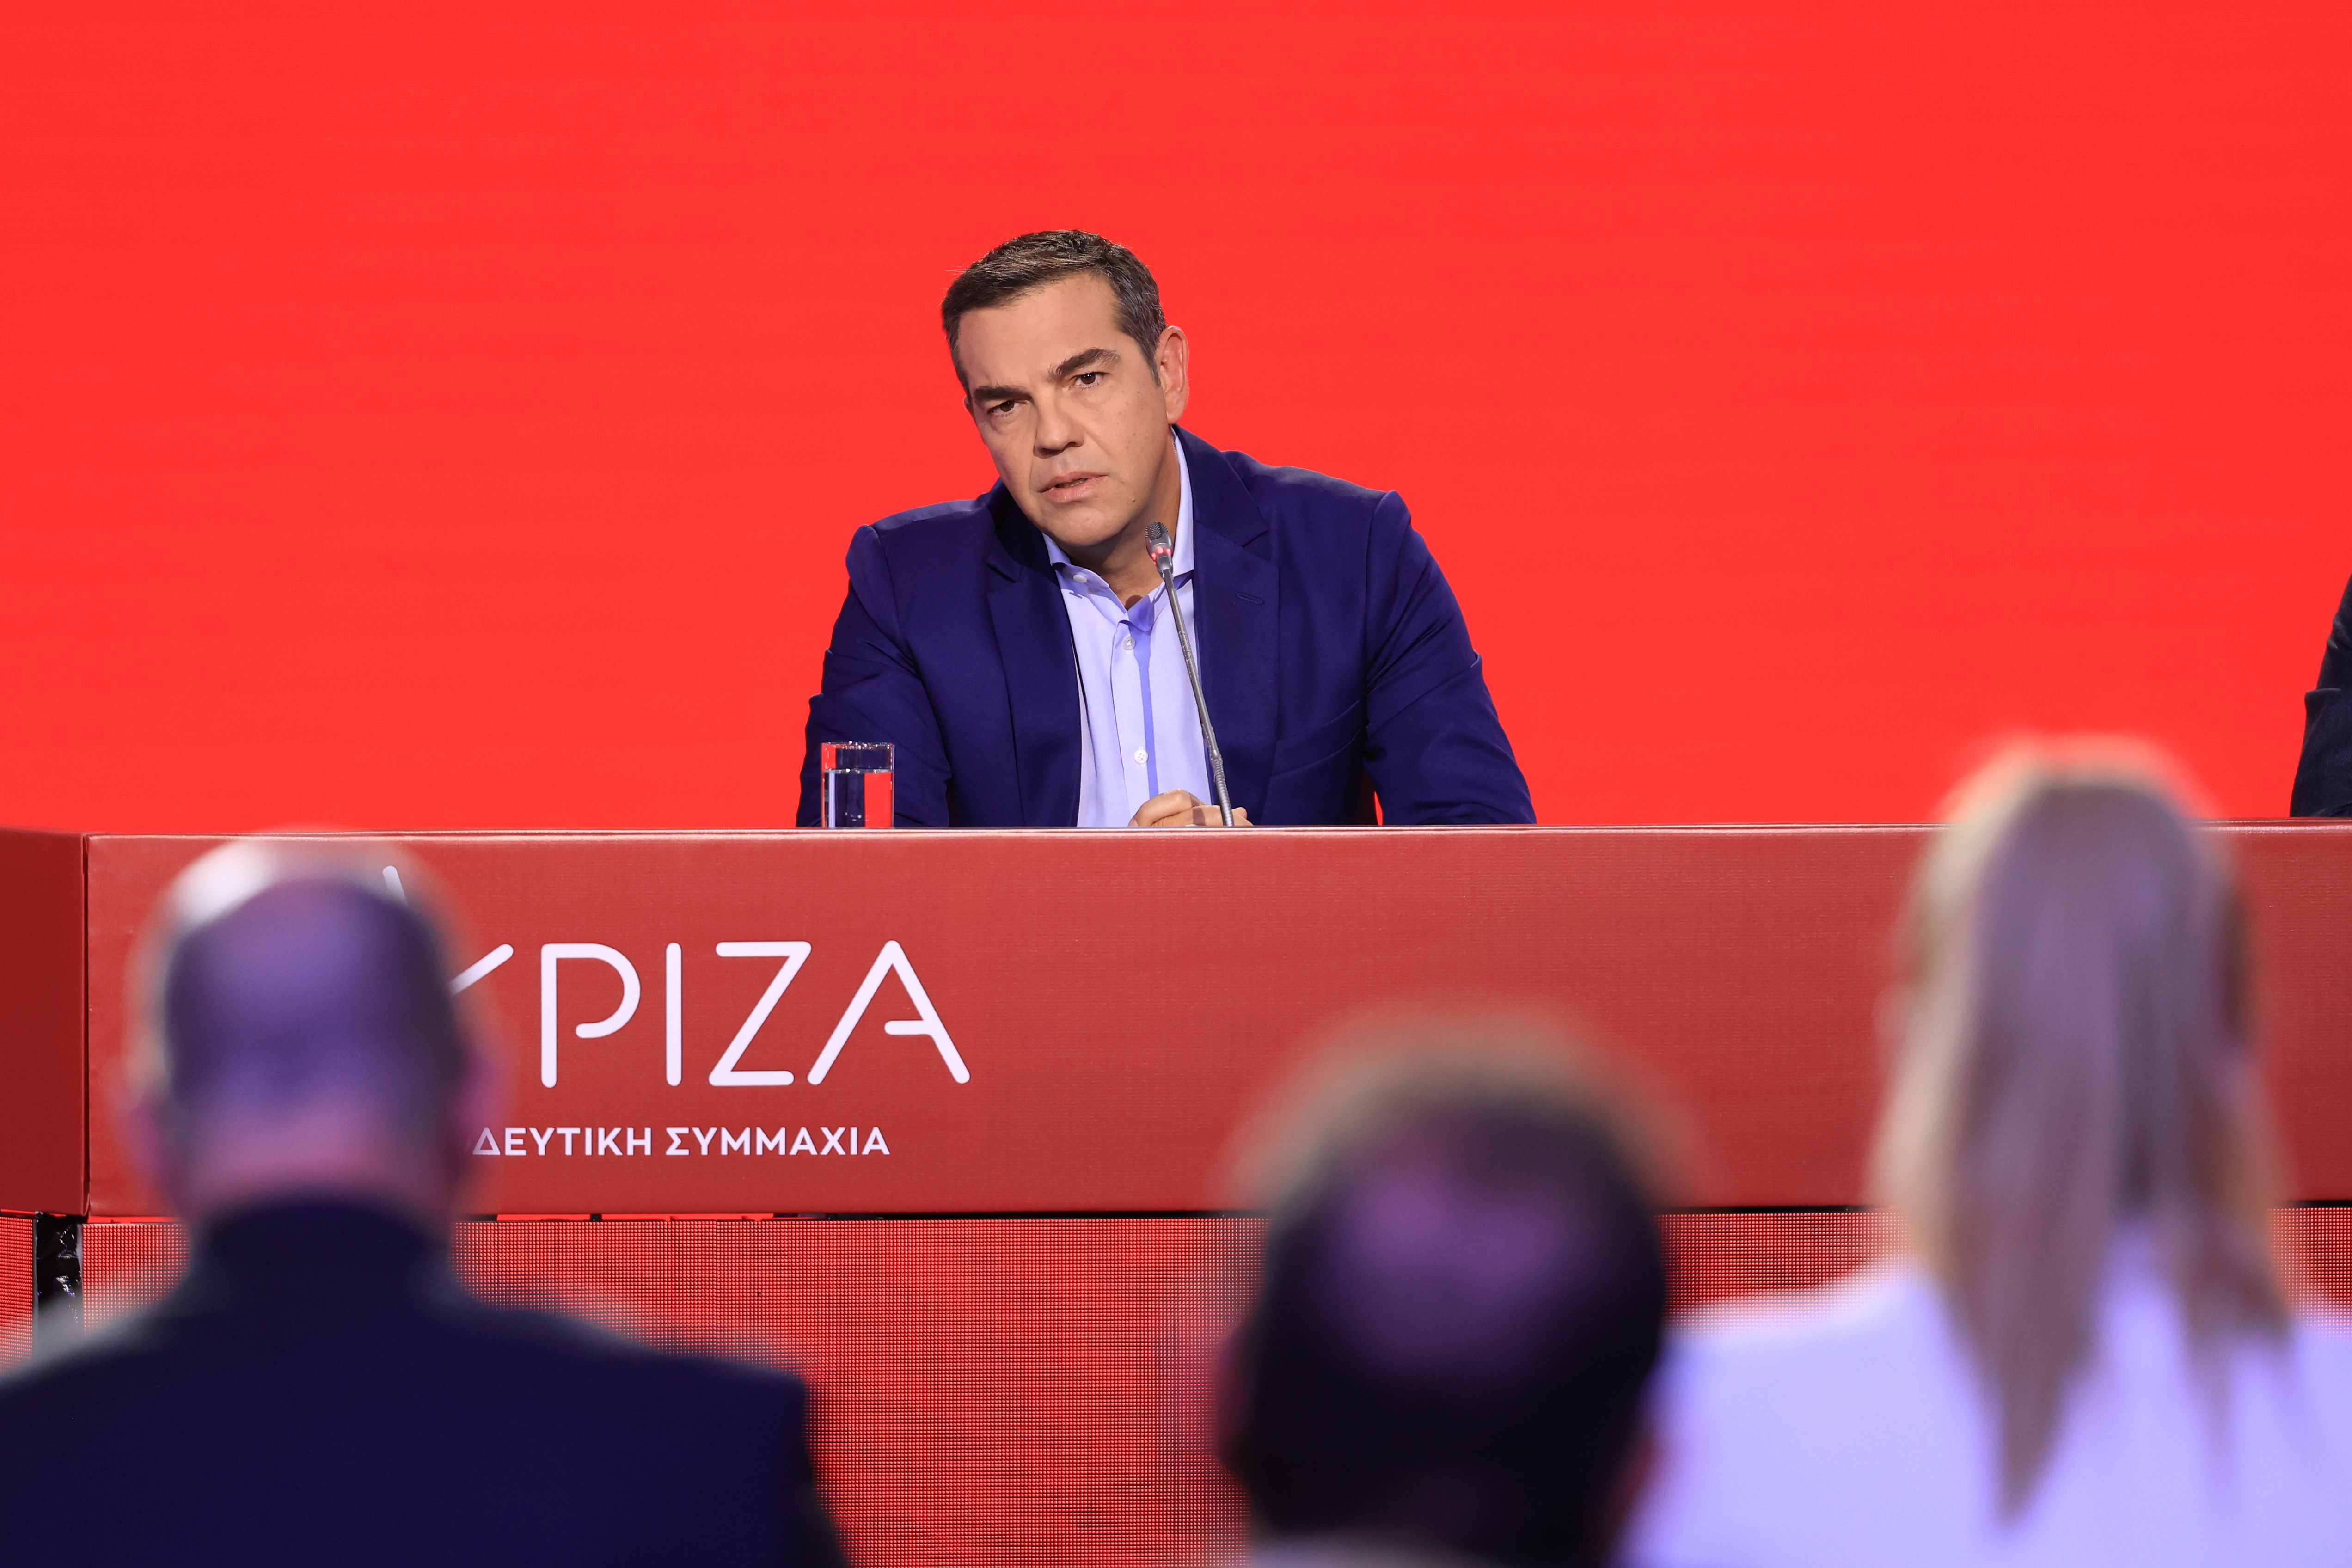  Συνέντευξη του Προέδρου του ΣΥΡΙΖΑ- Προοδευτική Συμμαχία, Αλέξη Τσίπρα στον τηλεοπτικό σταθμό ΑΝΤ1